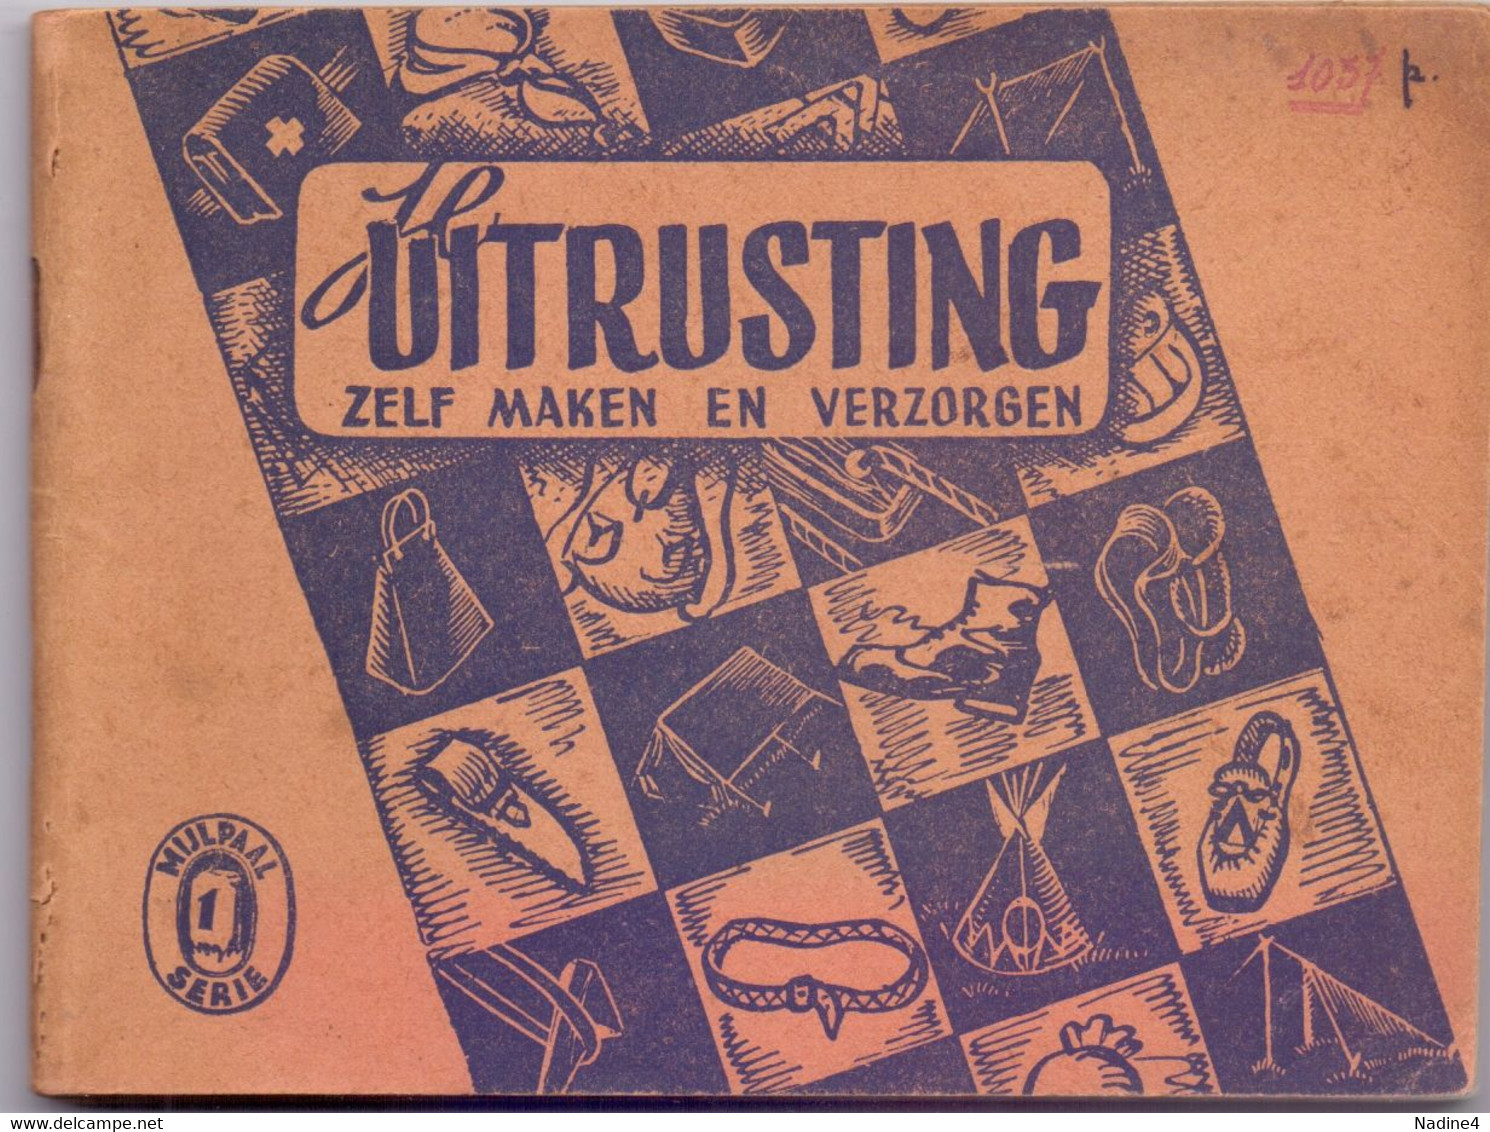 Scoutisme Scouts Padvinderij - Je Uitrusting - Ph. Tossijn - Uitg.De Pijl Leuven - 1942 - Jugend